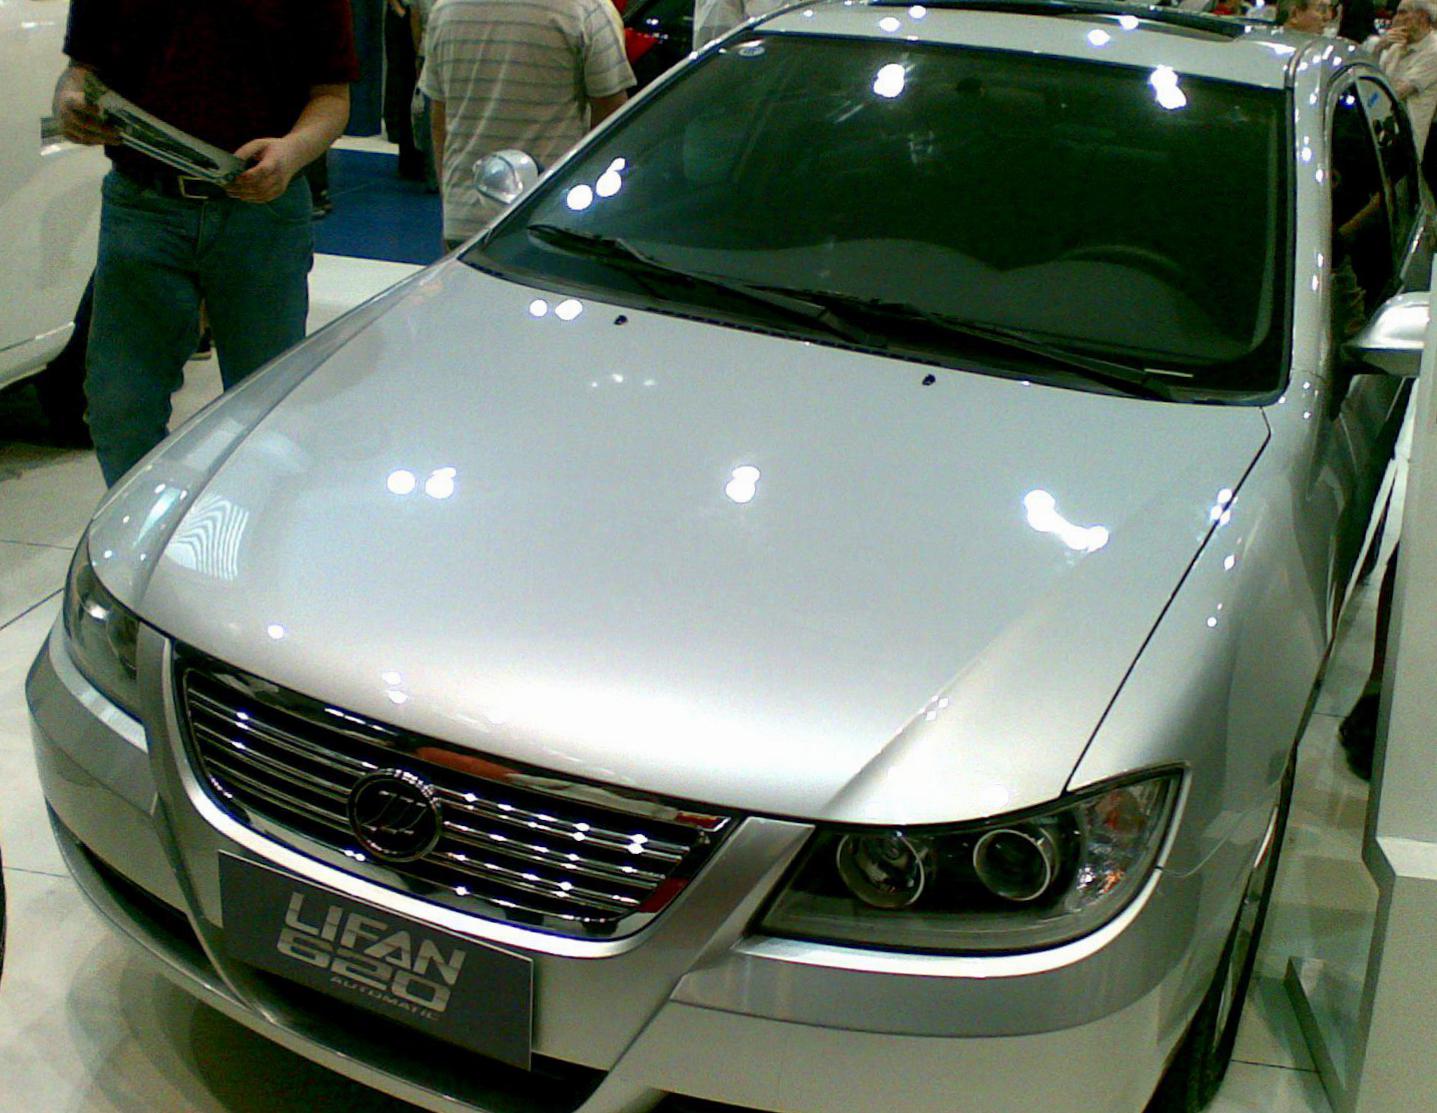 520 Lifan cost 2009